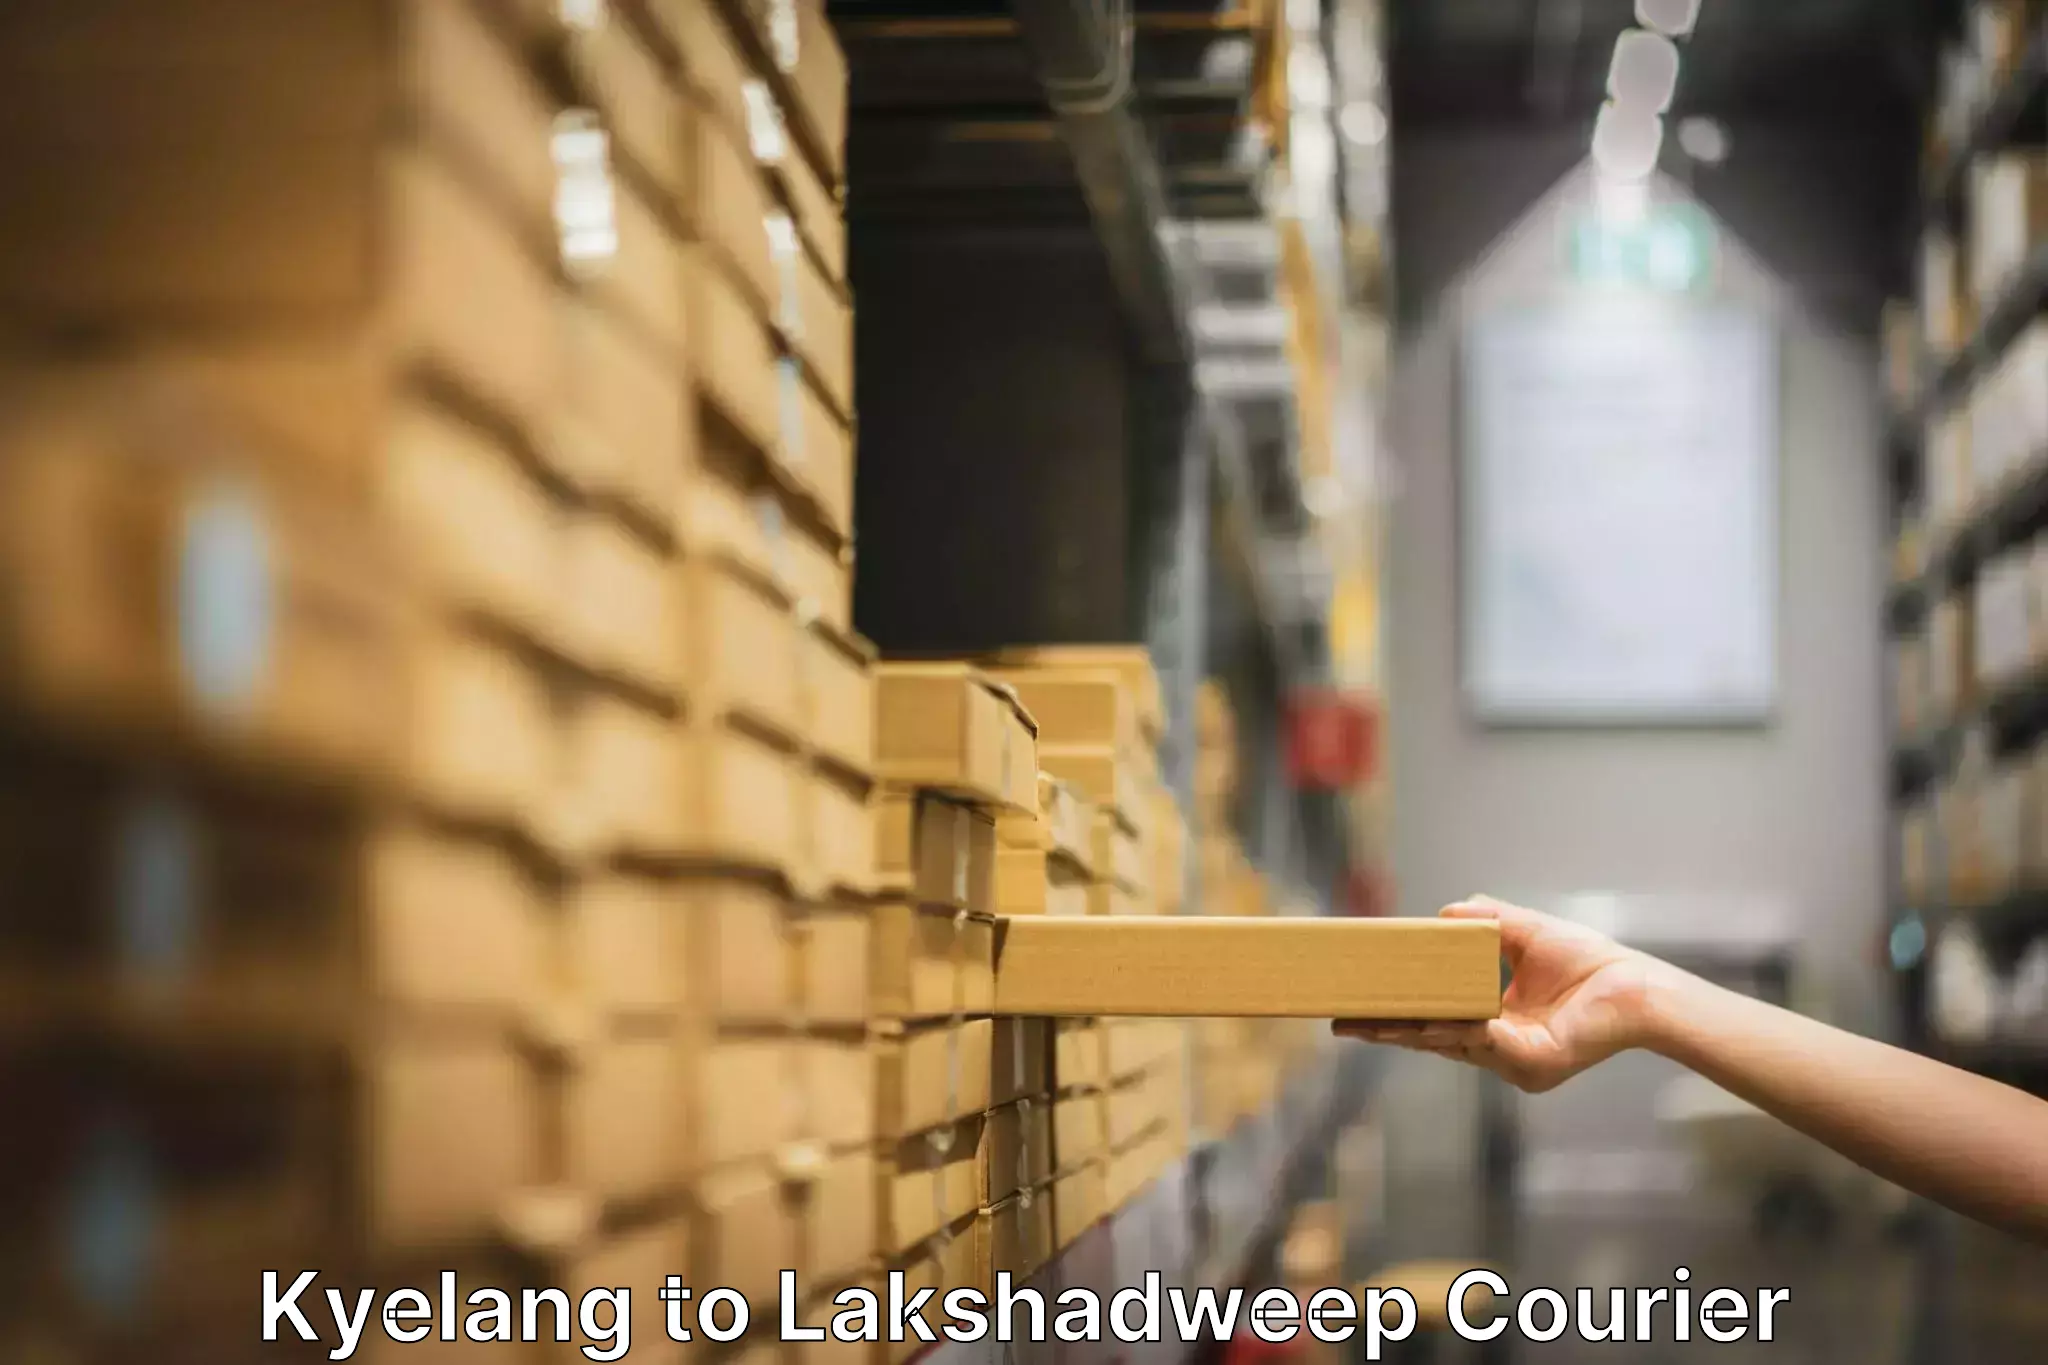 Professional movers Kyelang to Lakshadweep